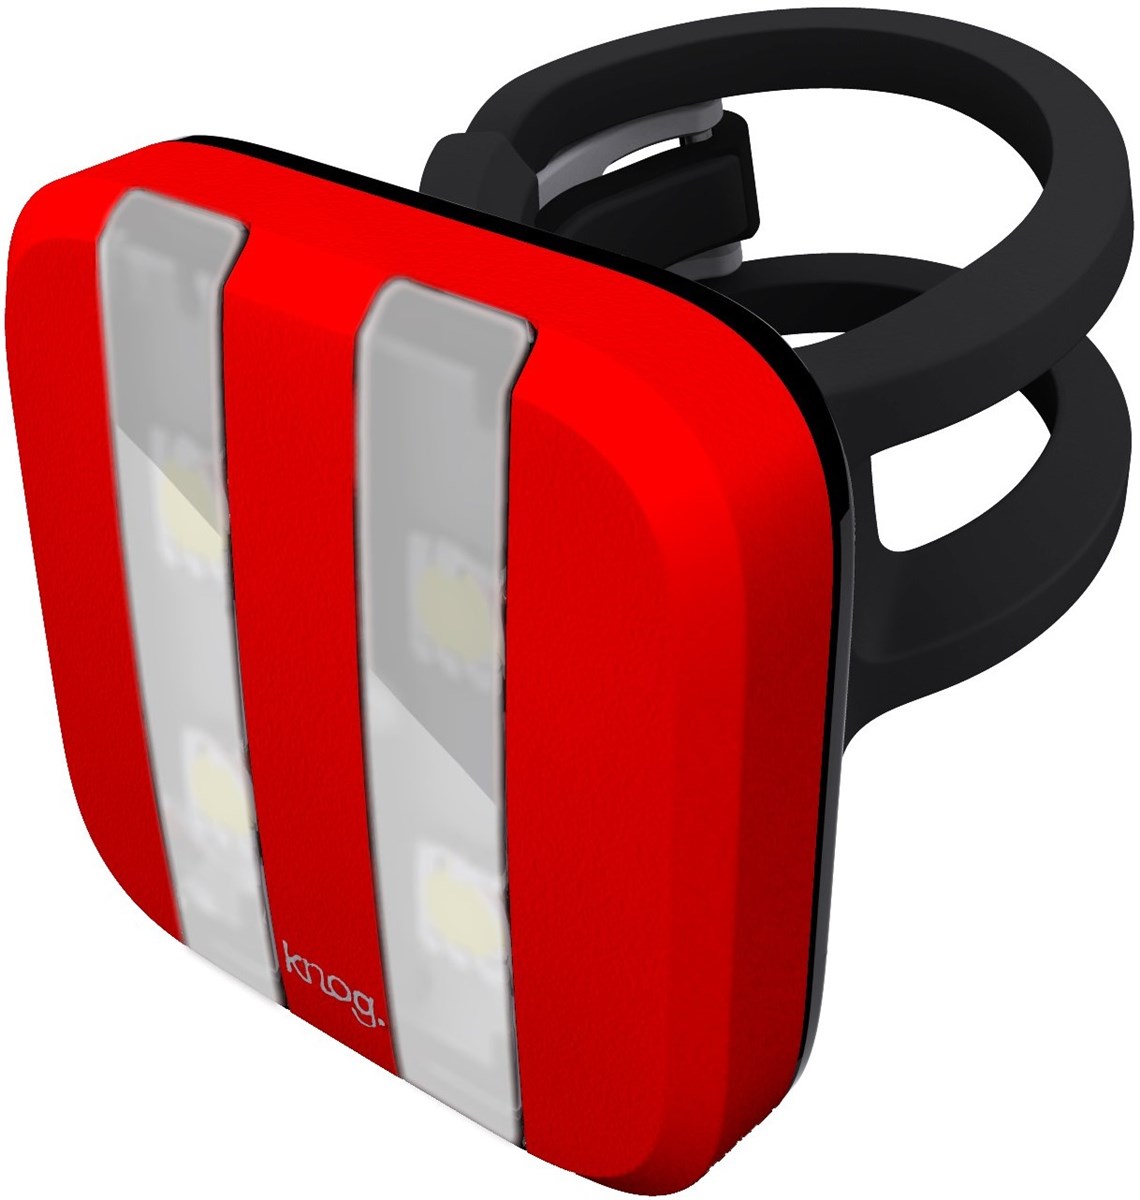 Knog Blinder 4 LED GT USB Rechargeable Rear Light product image